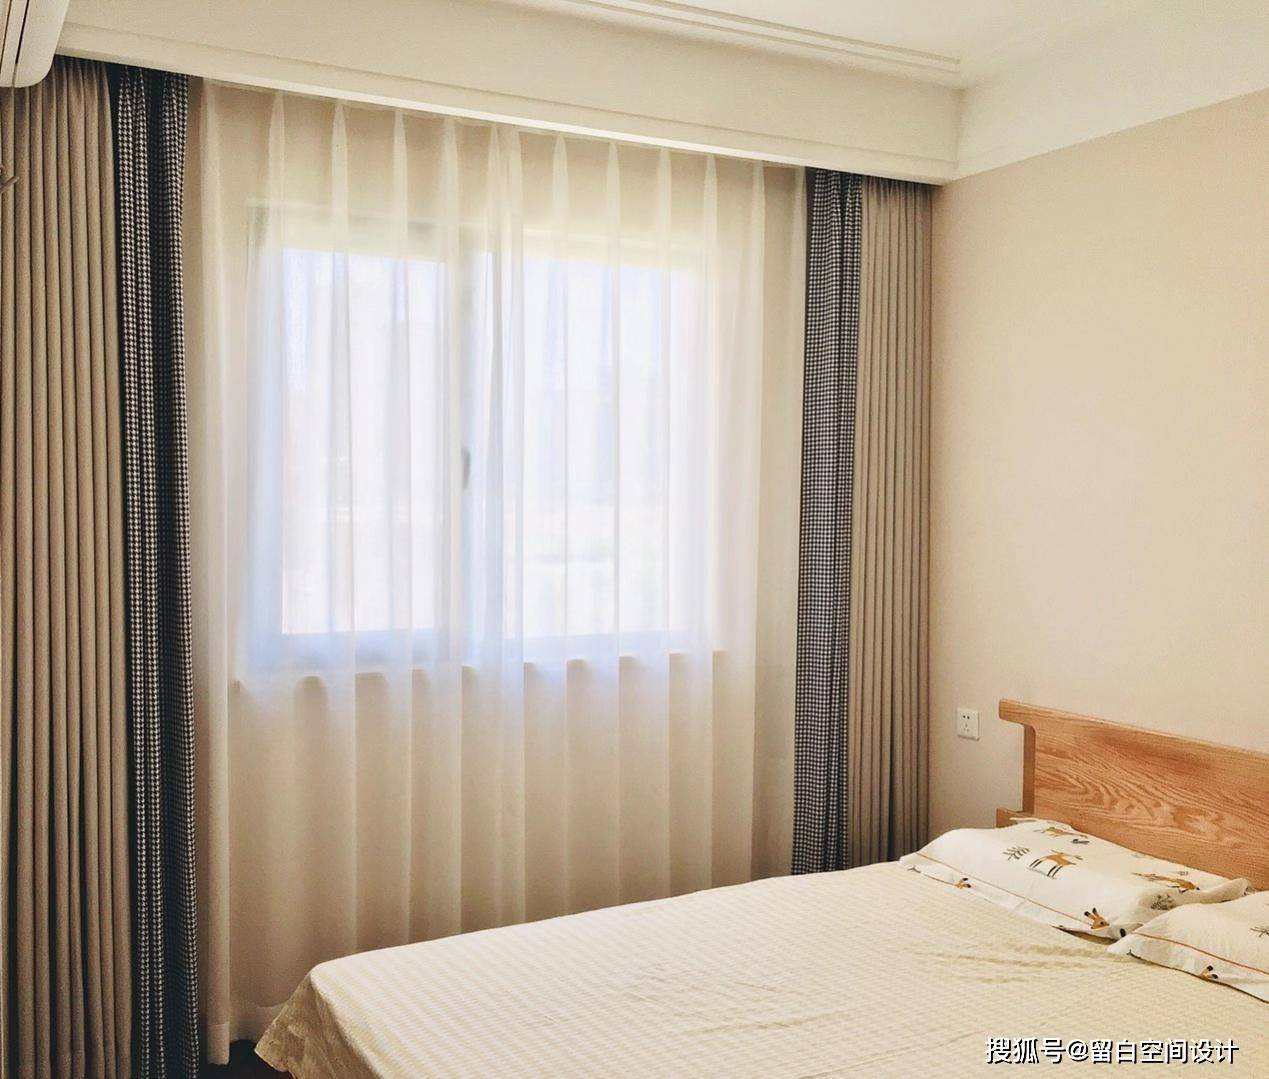 老人房为了保证老人良好的睡眠效果,可以选择棉麻类较厚的窗帘,隔音和